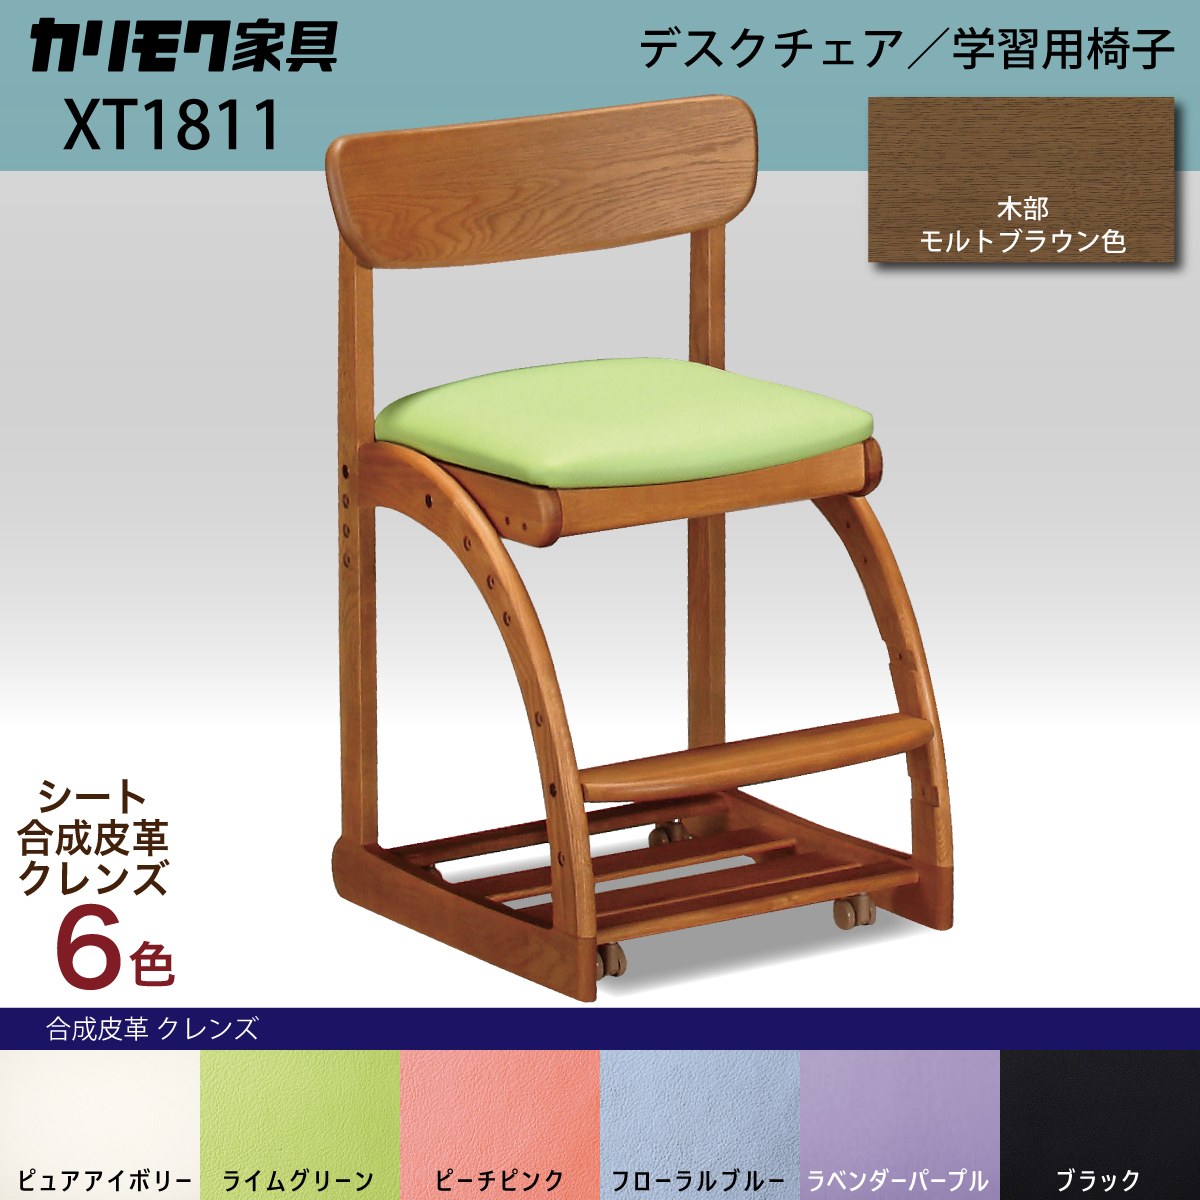 カリモク 学習椅子 木製 XT1811 モルトブラウン色 デスクチェア 子供